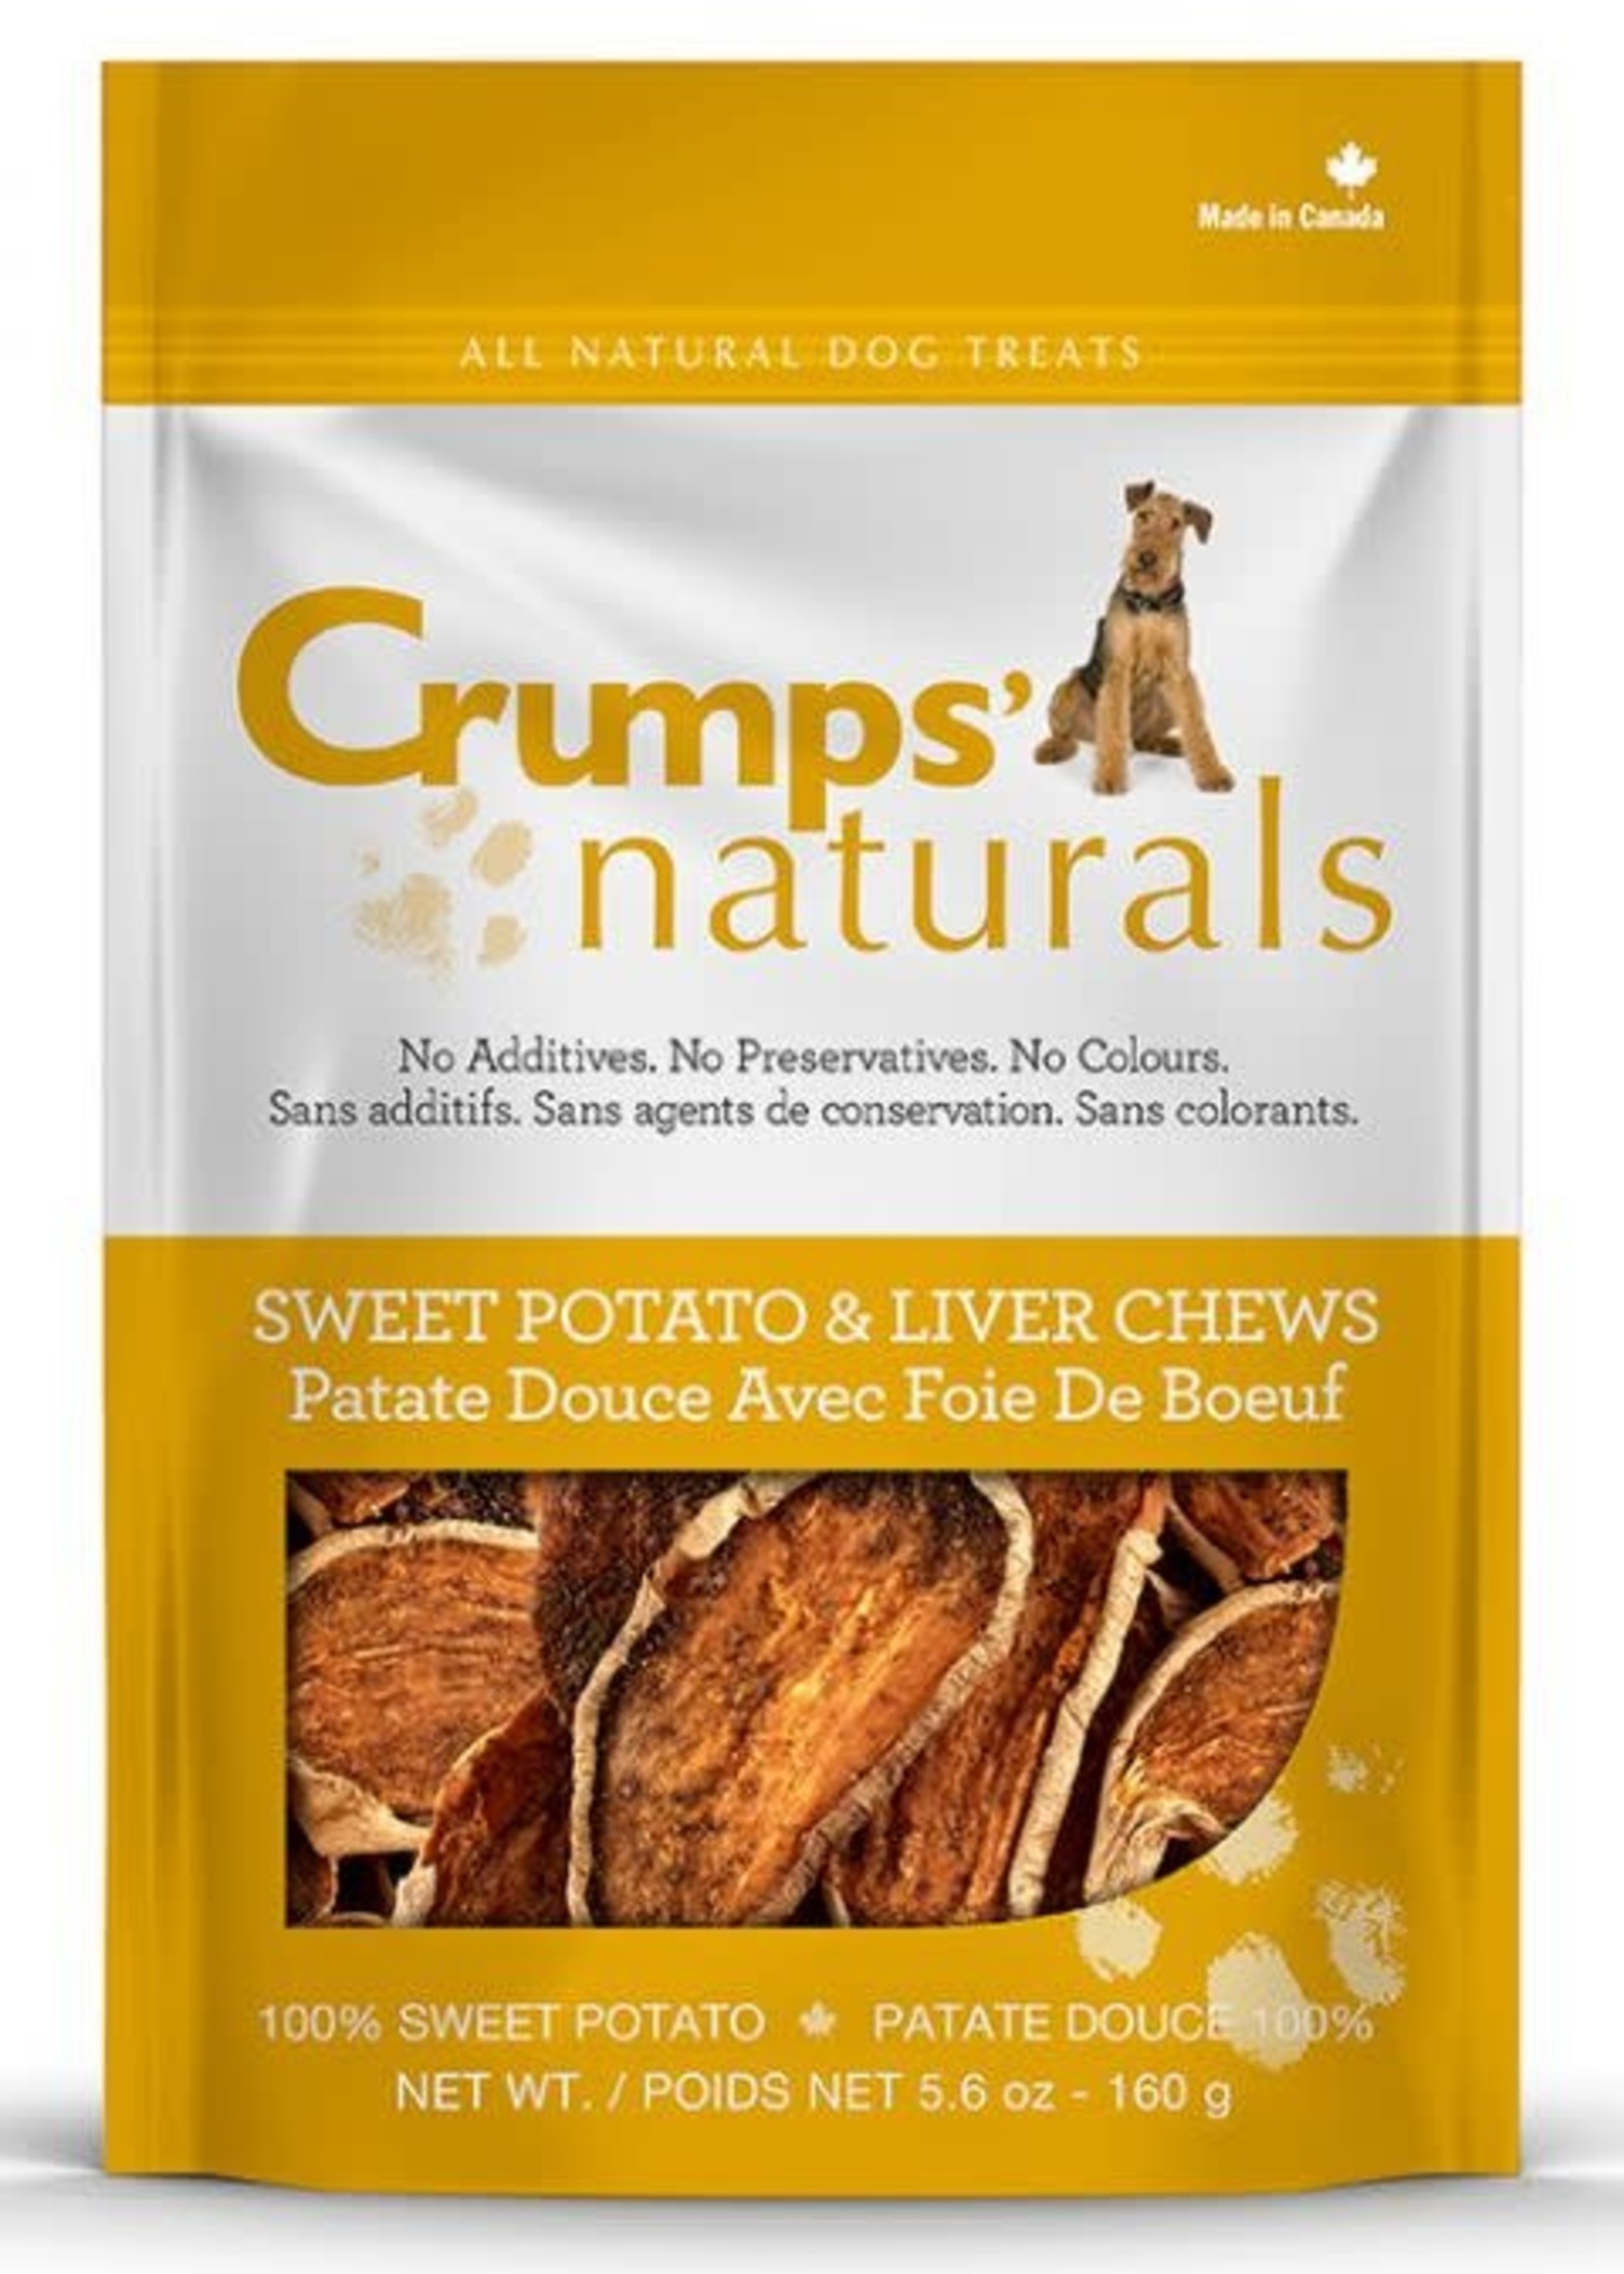 CRUMPS' NATURALS® Crumps’ Naturals Sweet Potato & Liver Chews 160g